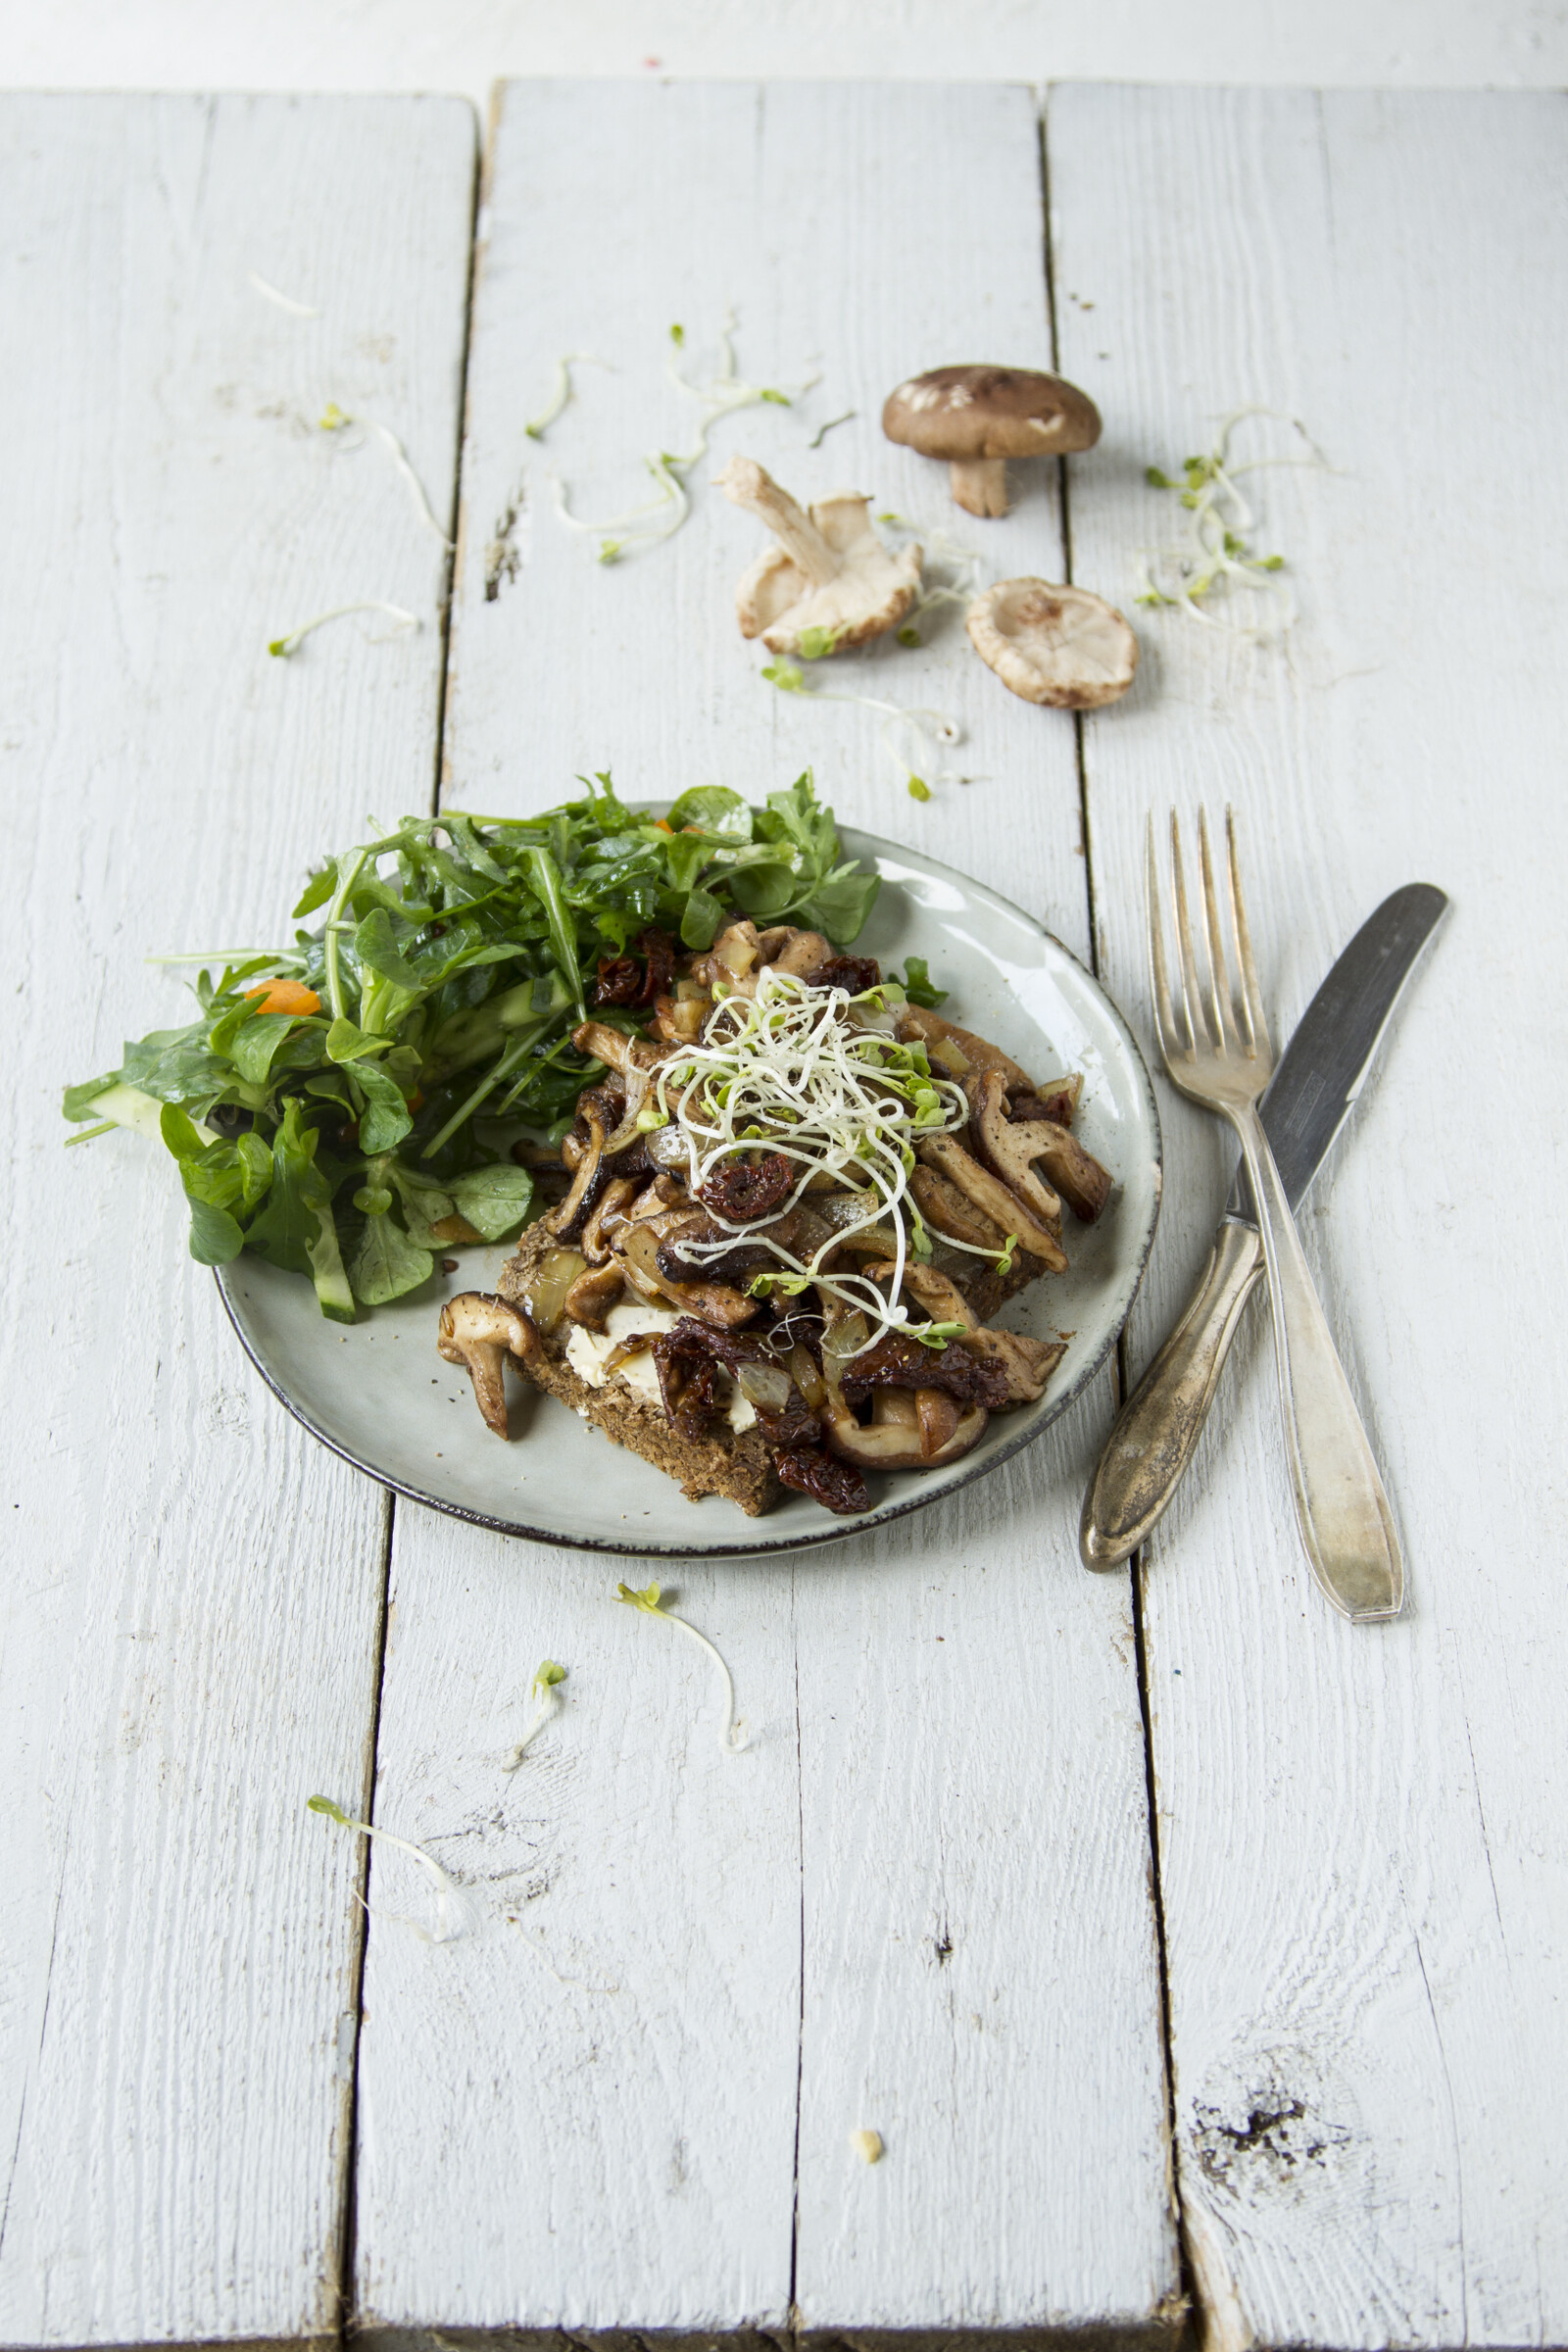 lunch met haver- of roggebrood, paddenstoelen en salade, een feestmaal voor je darmbacterien